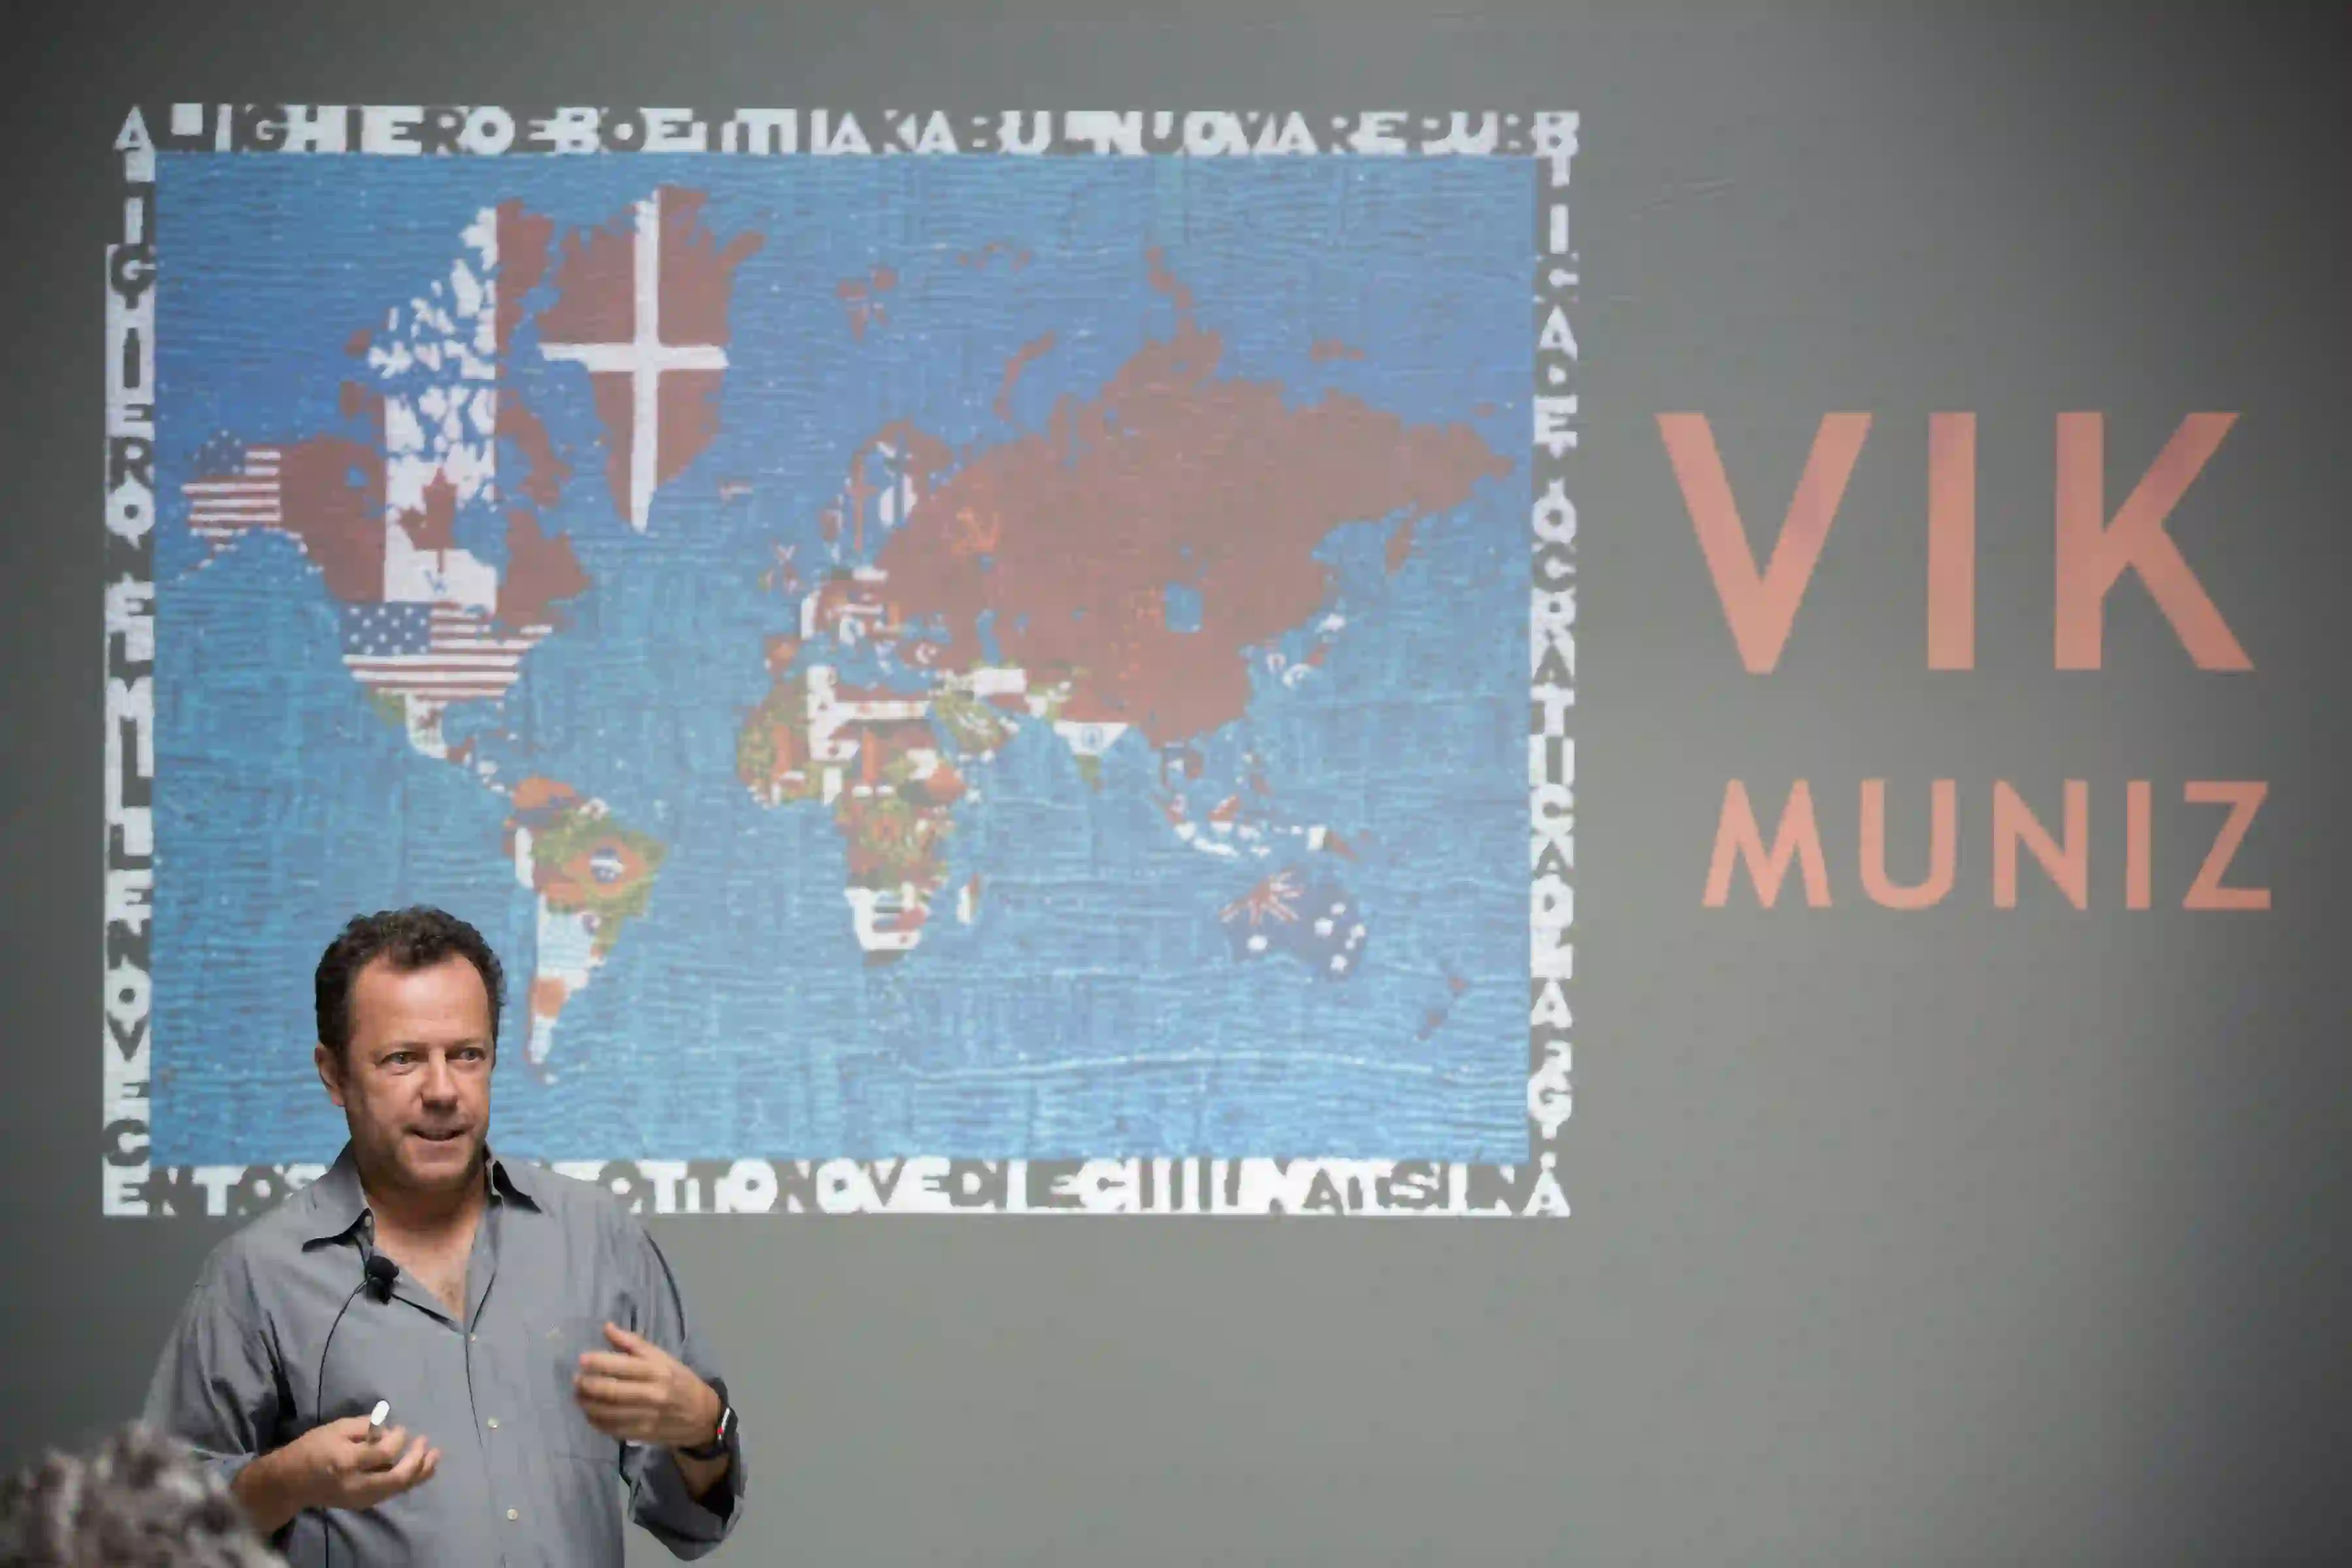 Vik Muniz speaks at Magazzino Italian Art Foundation